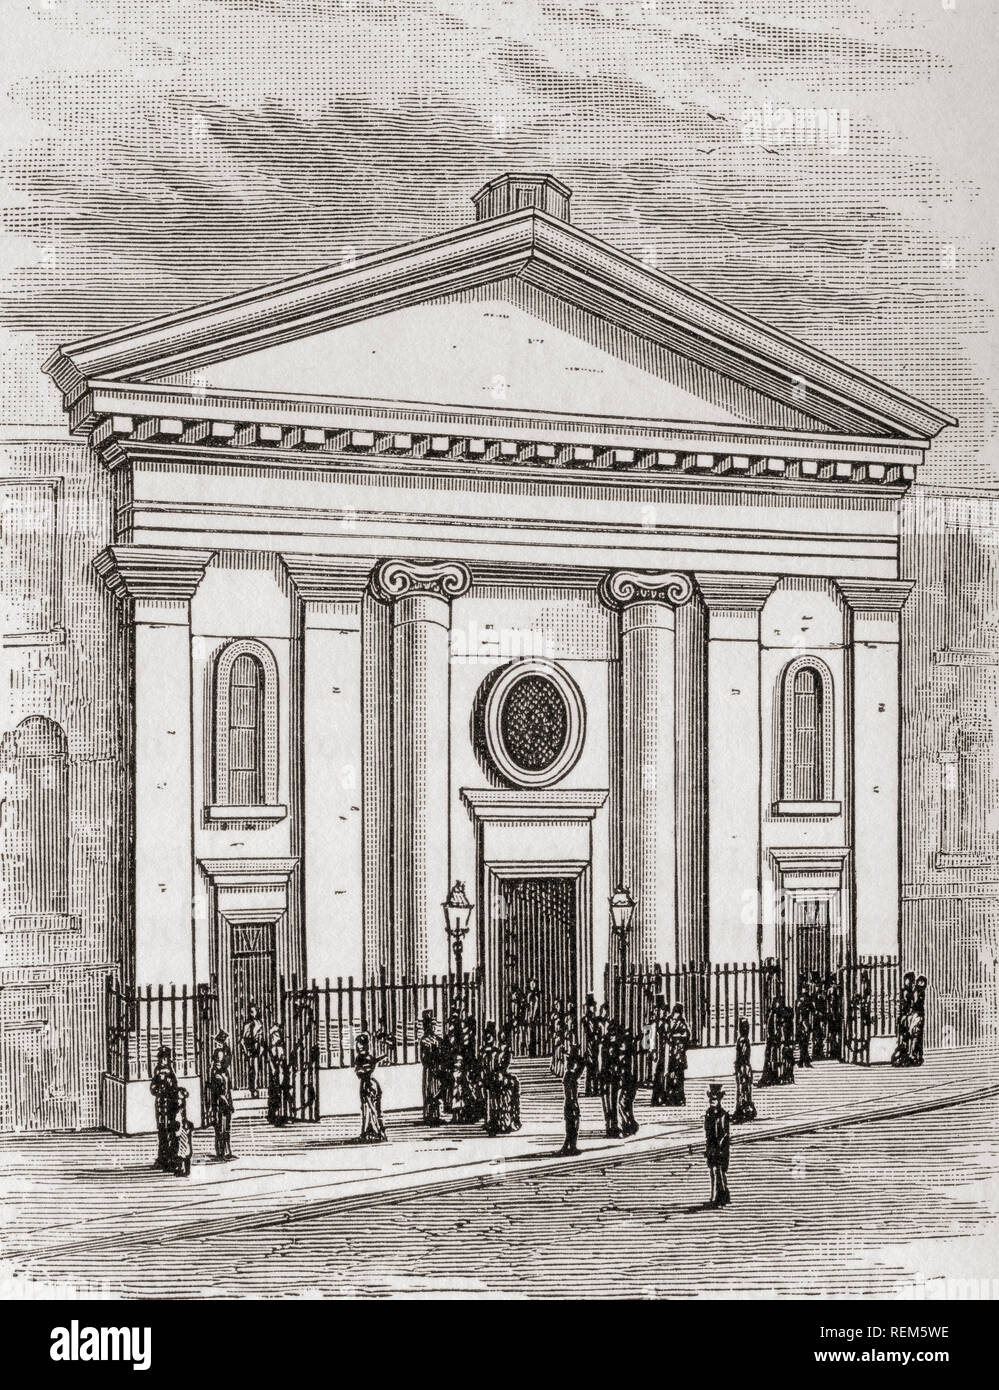 Il nuovo Re di pesare la cappella della casa a Londra, Inghilterra, costruito nel 1833-4 e distrutta nel 1882 quando il sito è stato obbligatoriamente acquistata dalla Ferrovia Metropolitana. Da Londra Foto, pubblicato 1890 Foto Stock